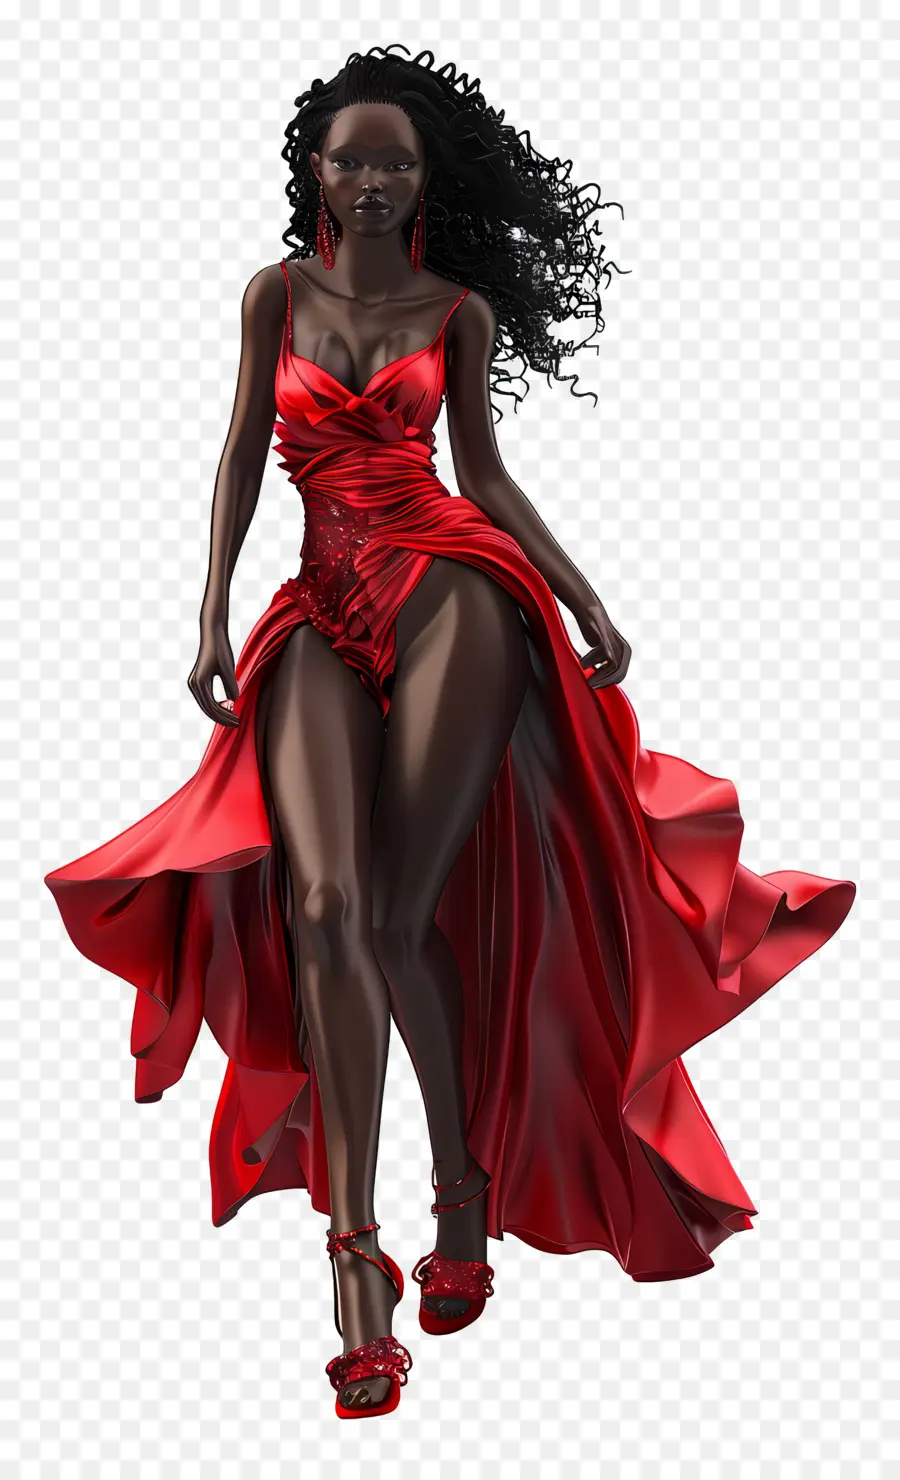 nền đỏ - 3d kết xuất của người phụ nữ mặc váy đỏ